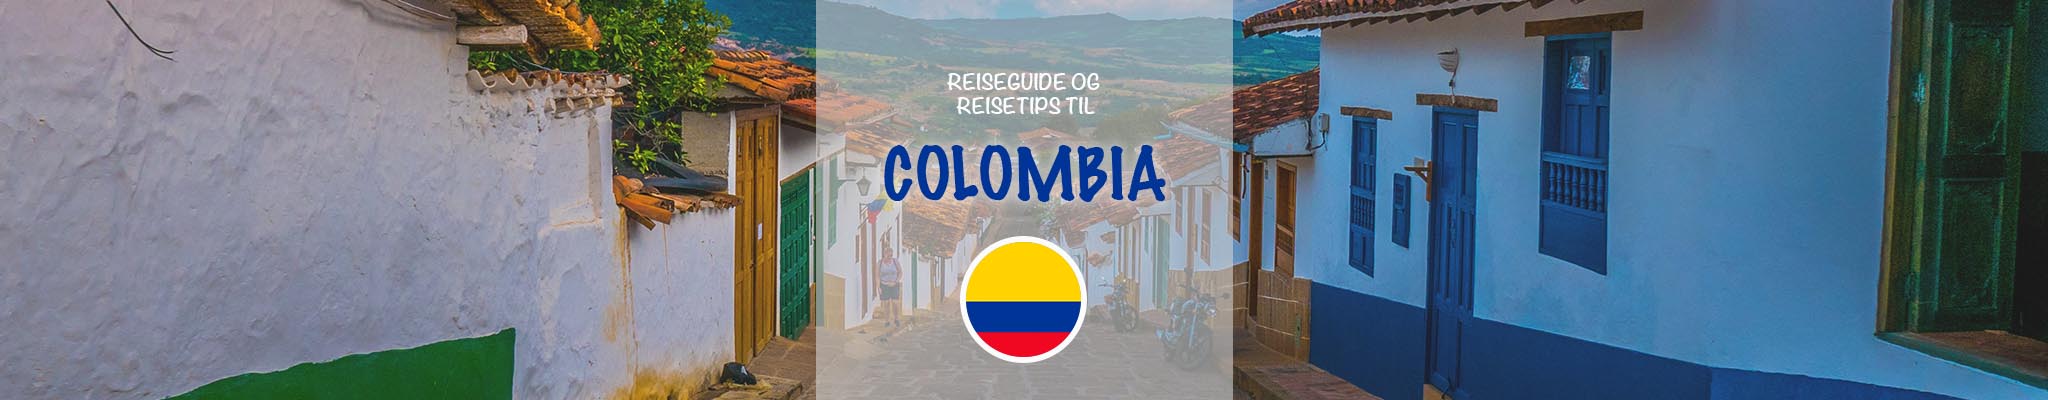 Reiseguide og reisetips til Colombia